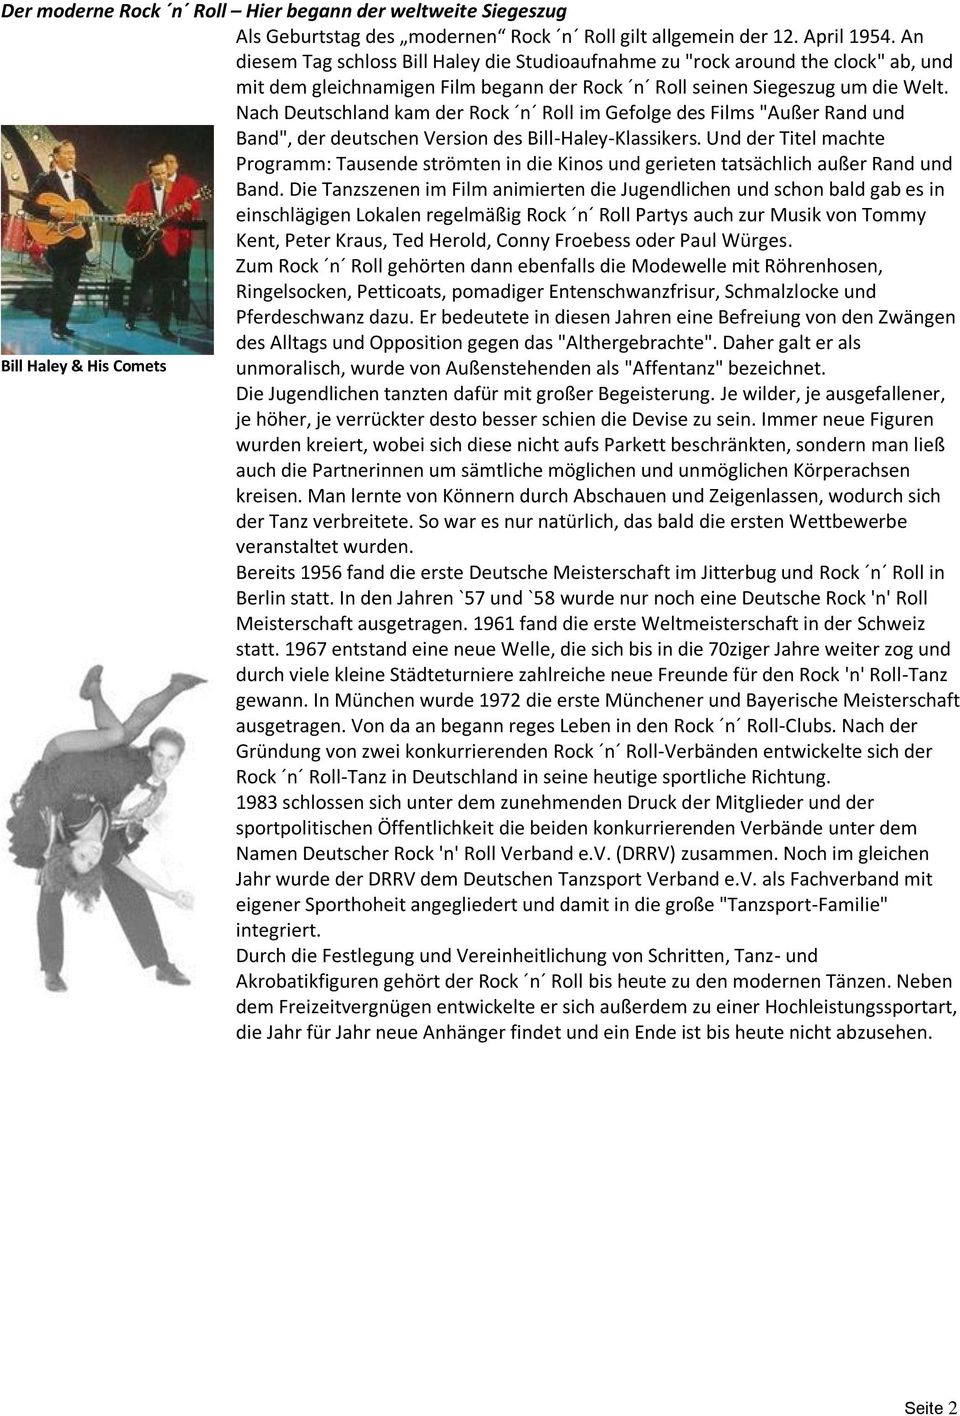 Nach Deutschland kam der Rock n Roll im Gefolge des Films "Außer Rand und Band", der deutschen Version des Bill-Haley-Klassikers.